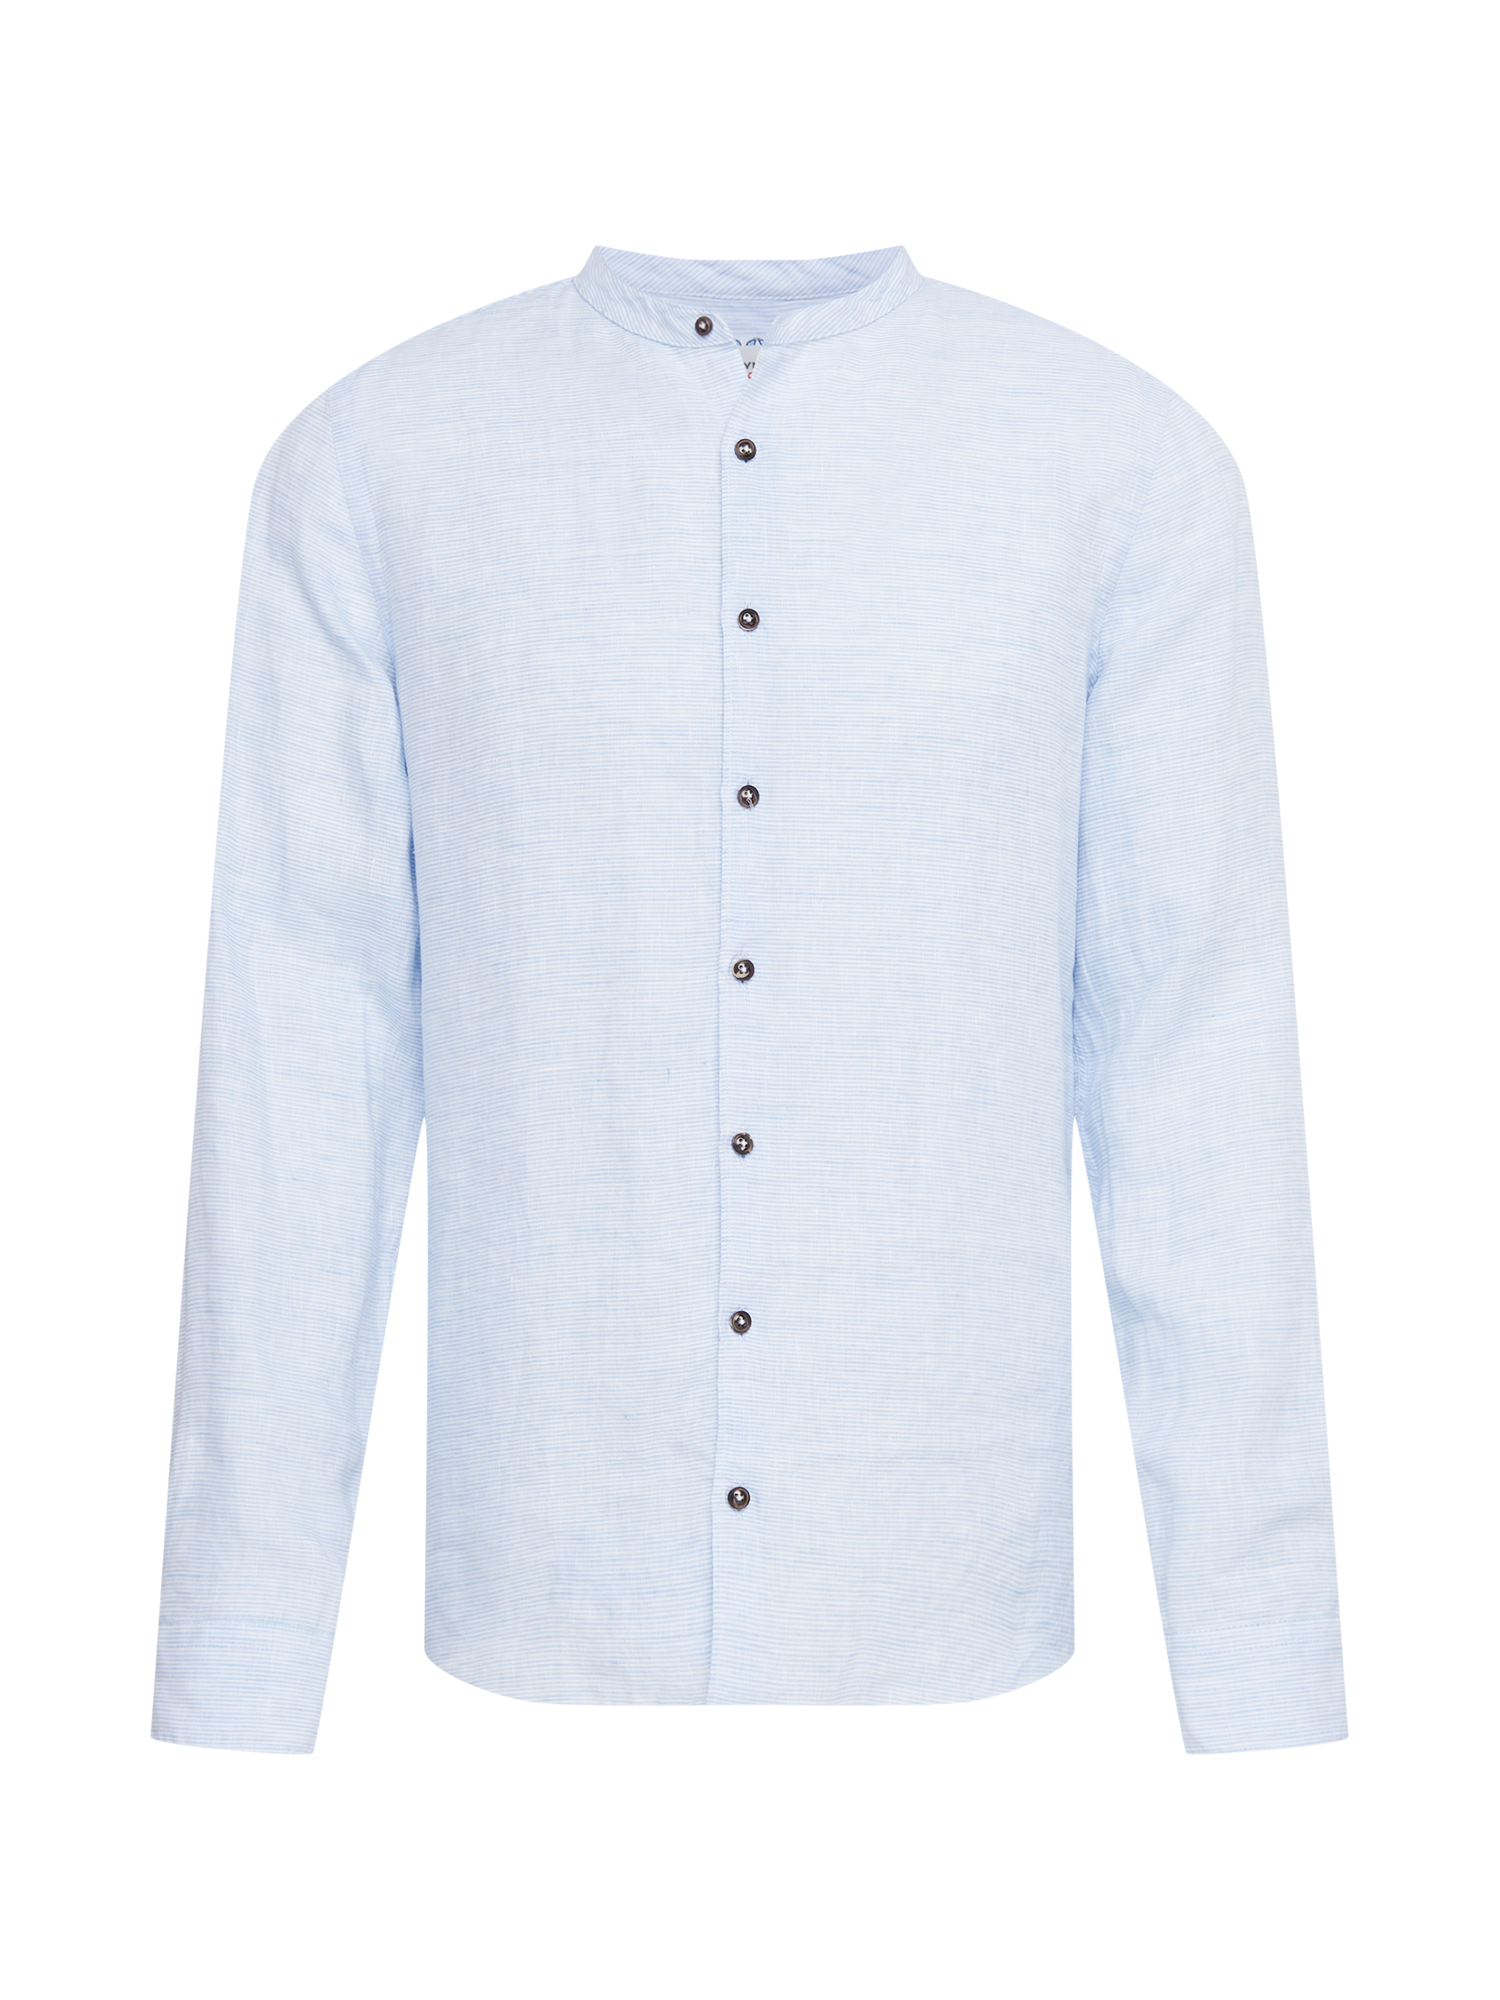 Odzież Mężczyźni OLYMP Koszula w kolorze Jasnoniebieskim 